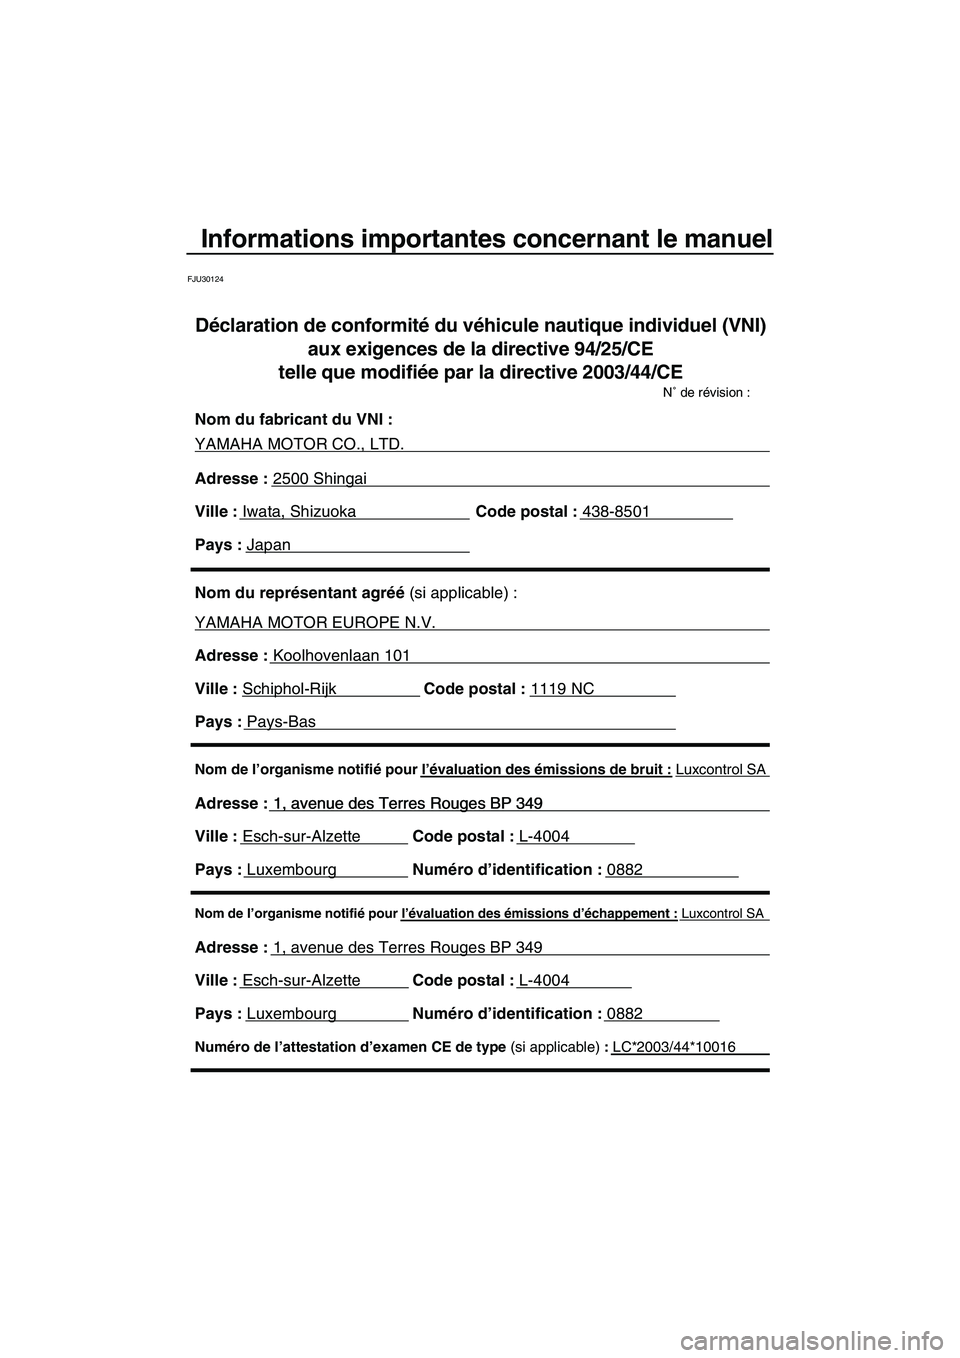 YAMAHA VX DELUXE 2010  Notices Demploi (in French) Informations importantes concernant le manuel
FJU30124
Nom de l’organisme notifié pour l’évaluation des émissions d’échappement : Luxcontrol SA
Adresse : 1, avenue des Terres Rouges BP 349 
